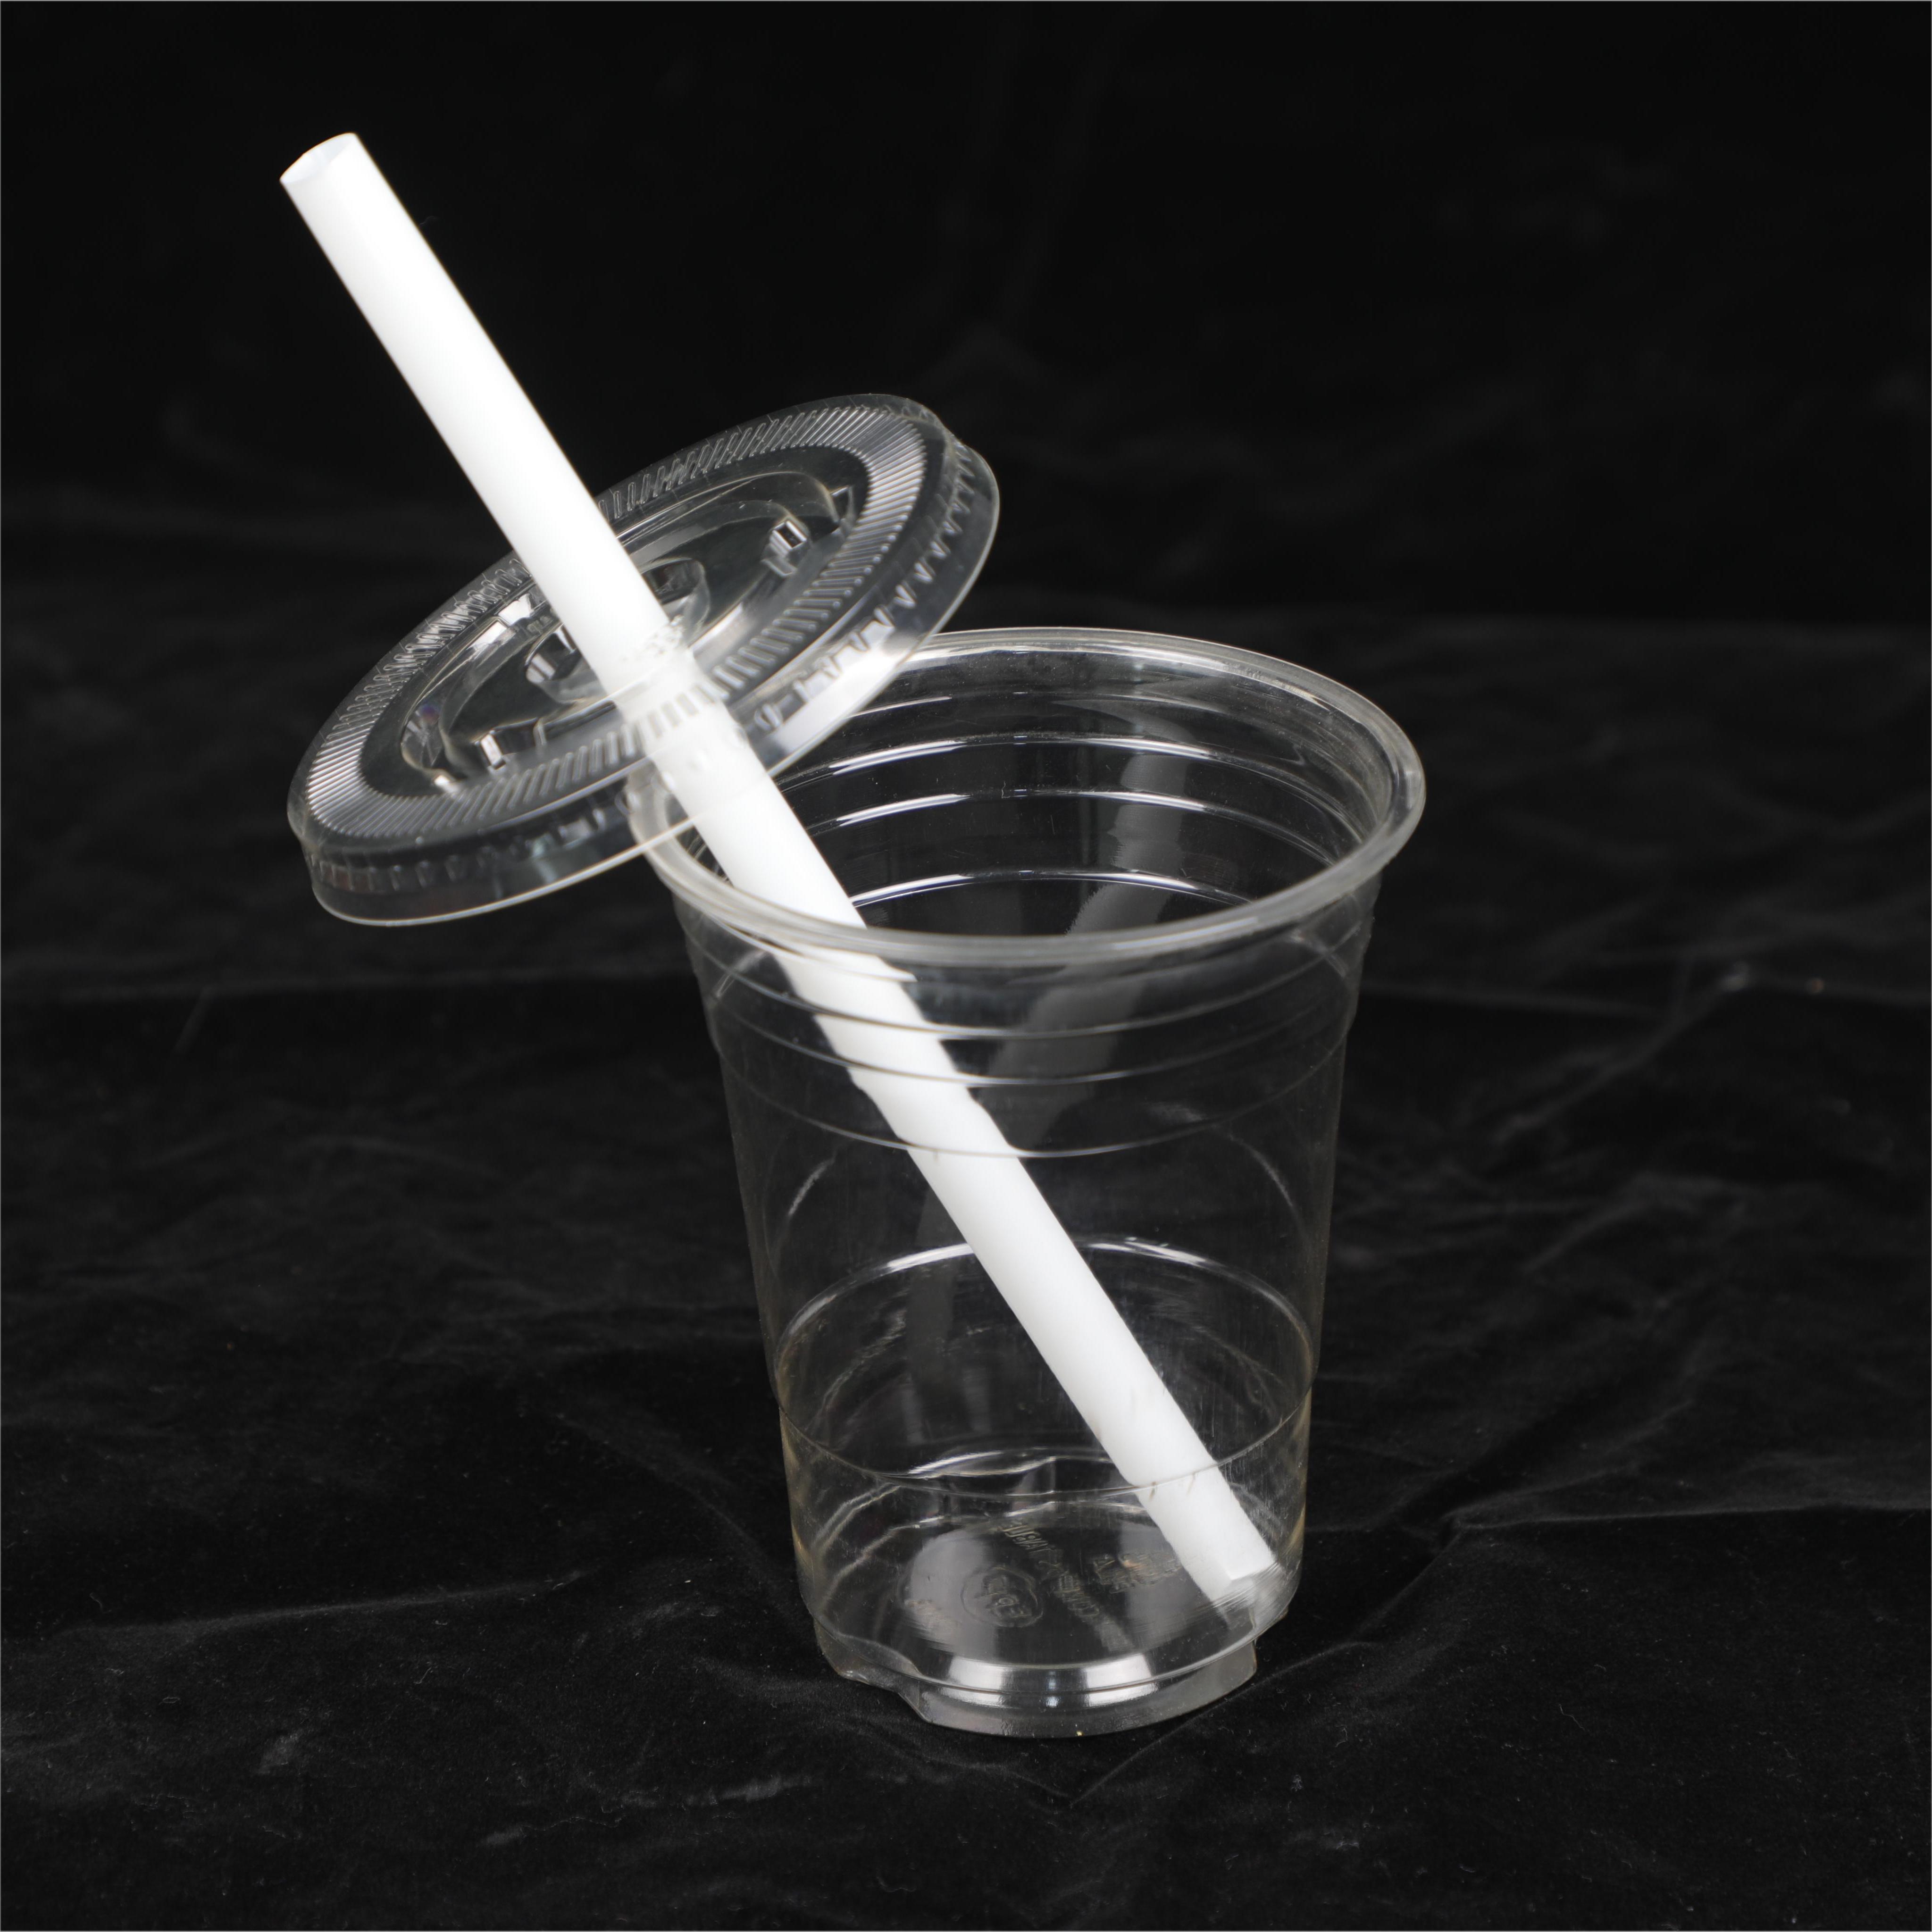 Горячие продажи переработанных биоразлагаемых чашек PLA Cup-wallis для холодных напитков